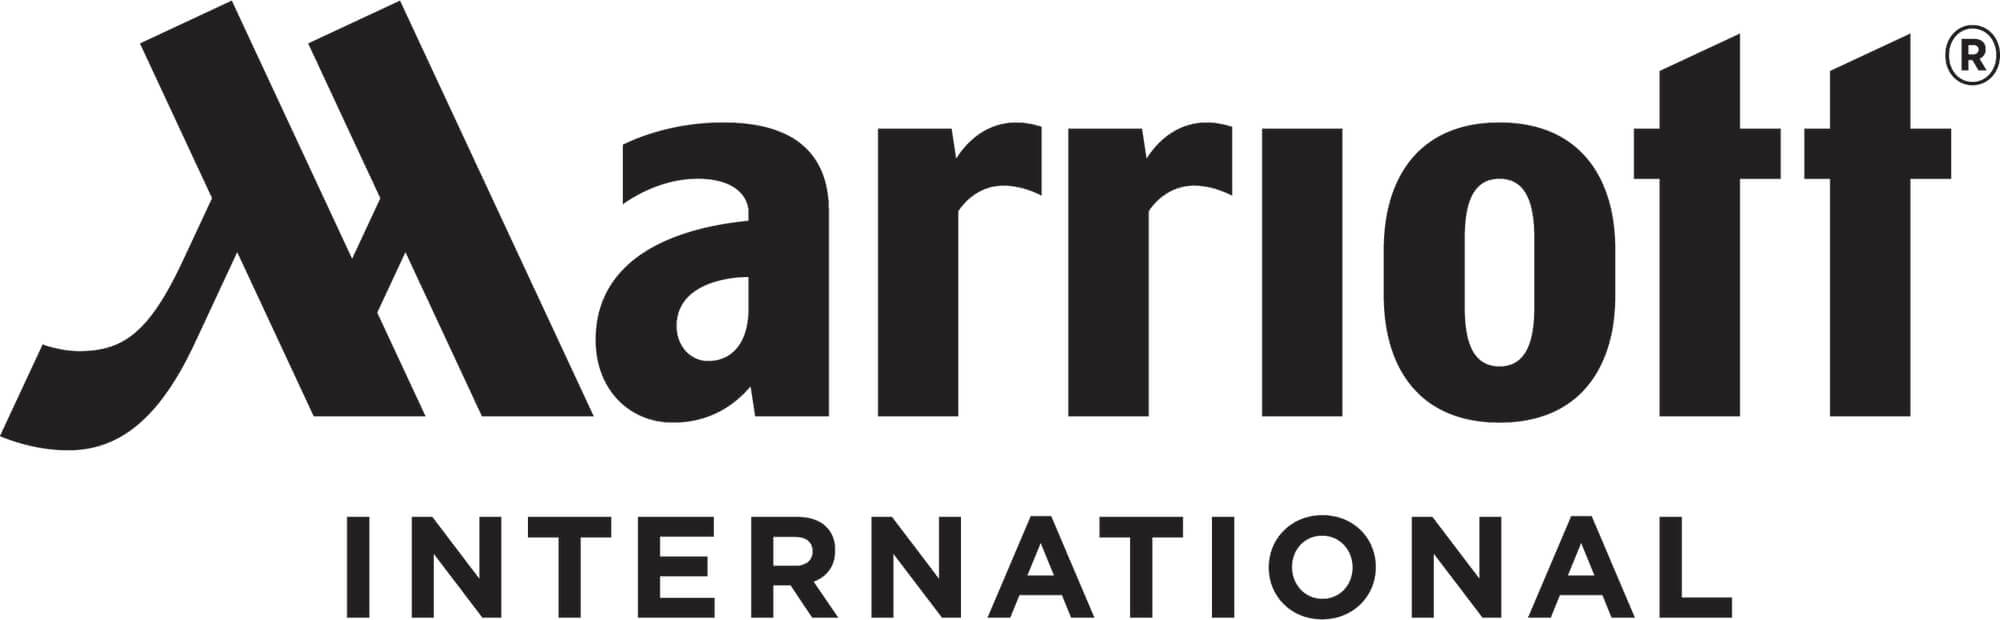 Marriott International Logo.jpg